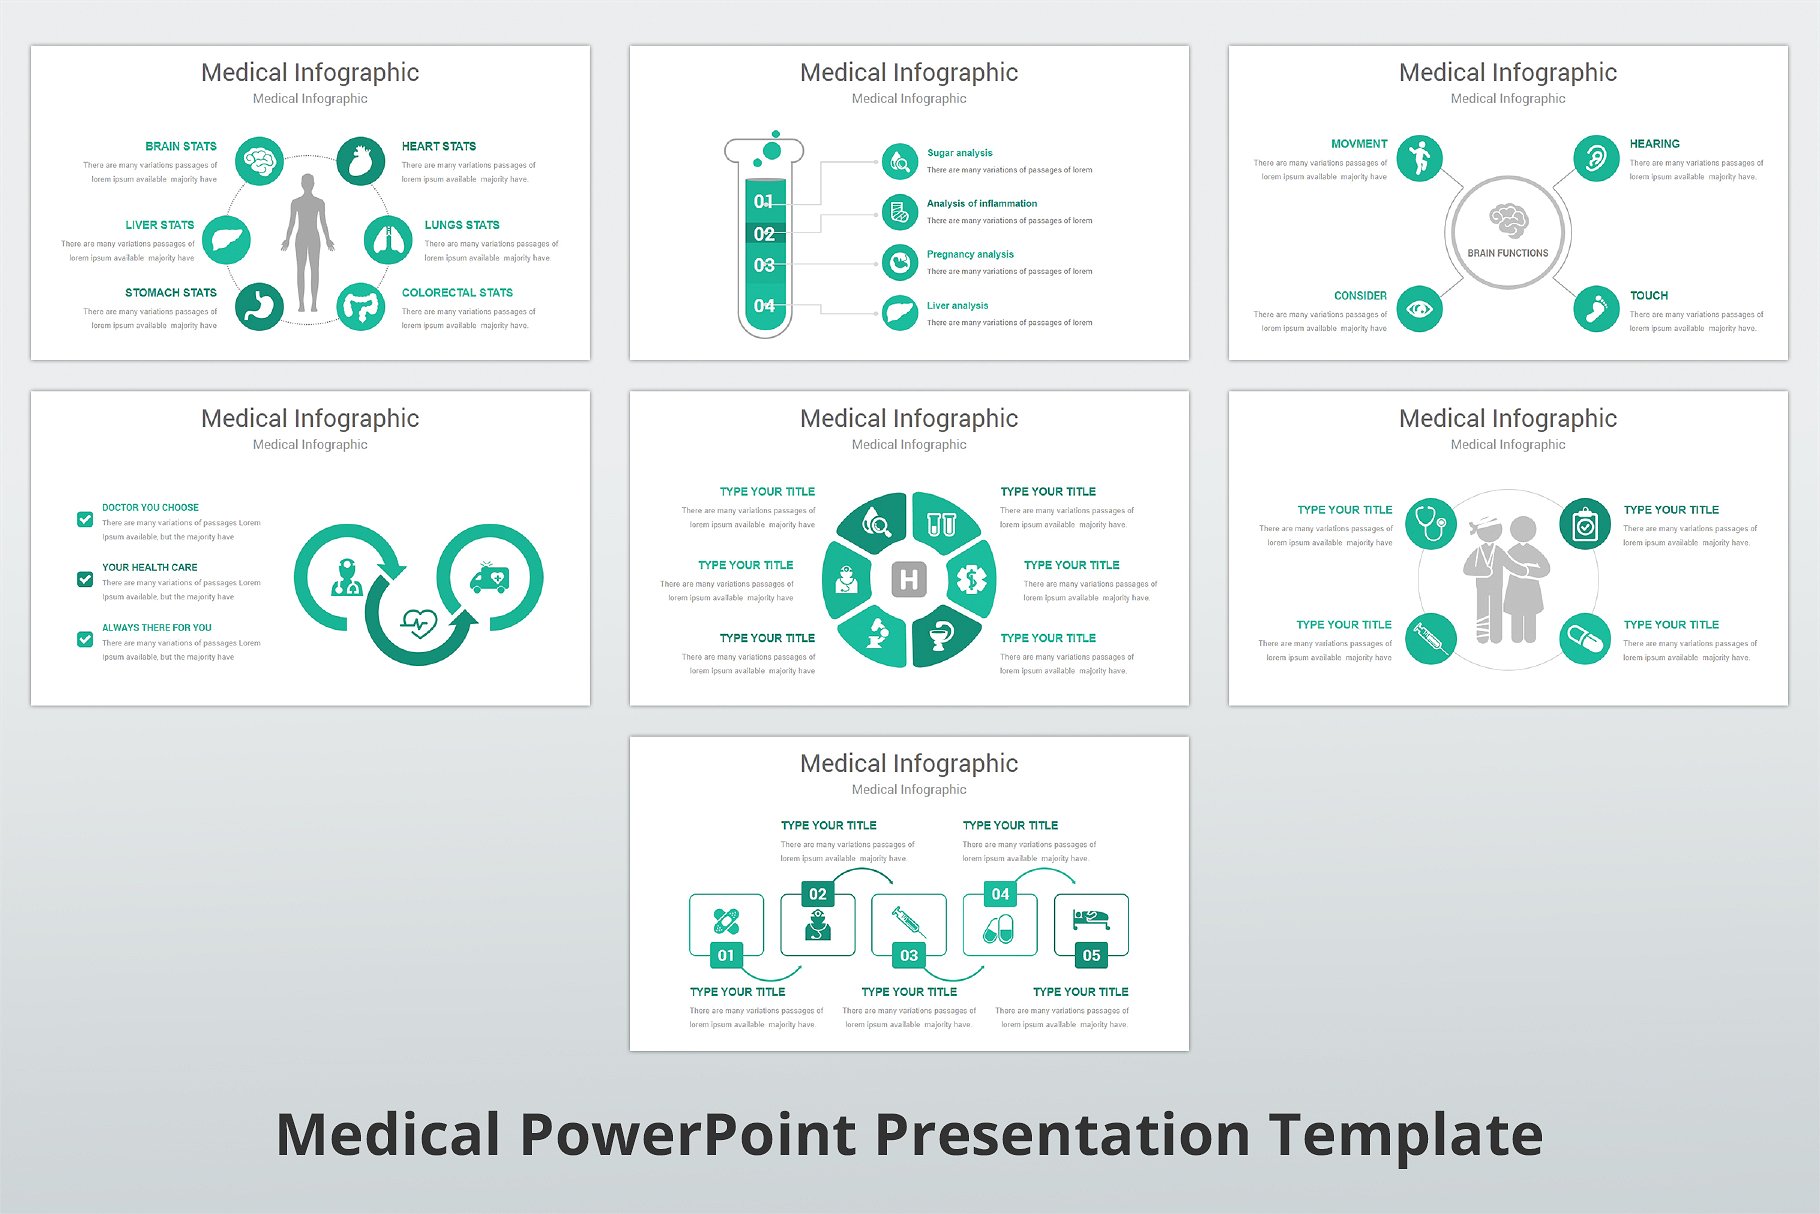 高品质医疗行业演示的PPT模板下载 Medical PowerPoint Template [pptx]插图(11)